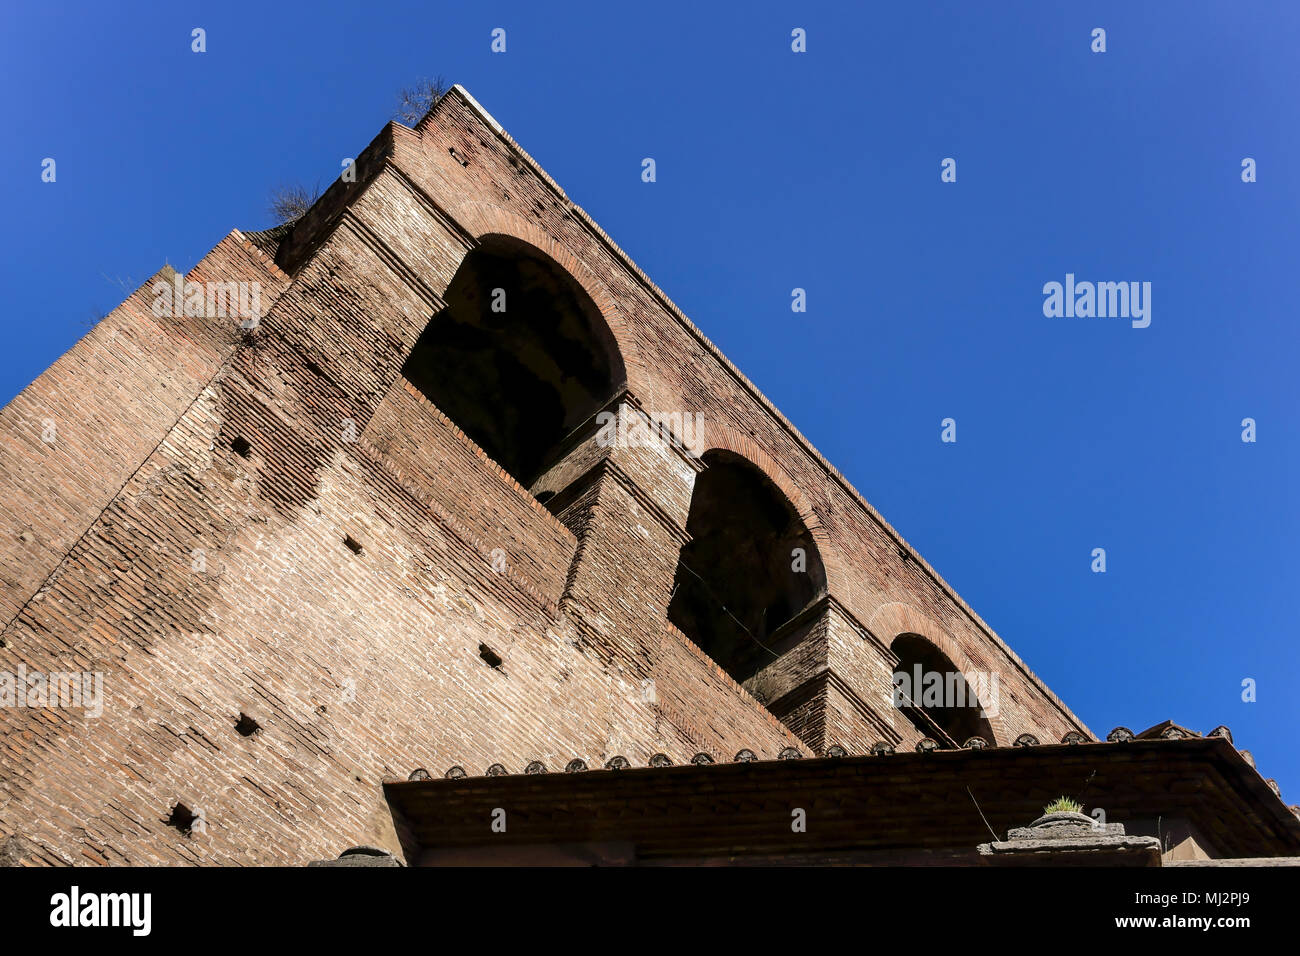 Aurelianische Mauern (Mura Aureliane), alte Stadtmauer von Rom, erbaut von Kaiser Aurelian im 3. Jahrhundert n. Chr. Erbe des römischen Reiches. Rom, Italien, Europa. Stockfoto